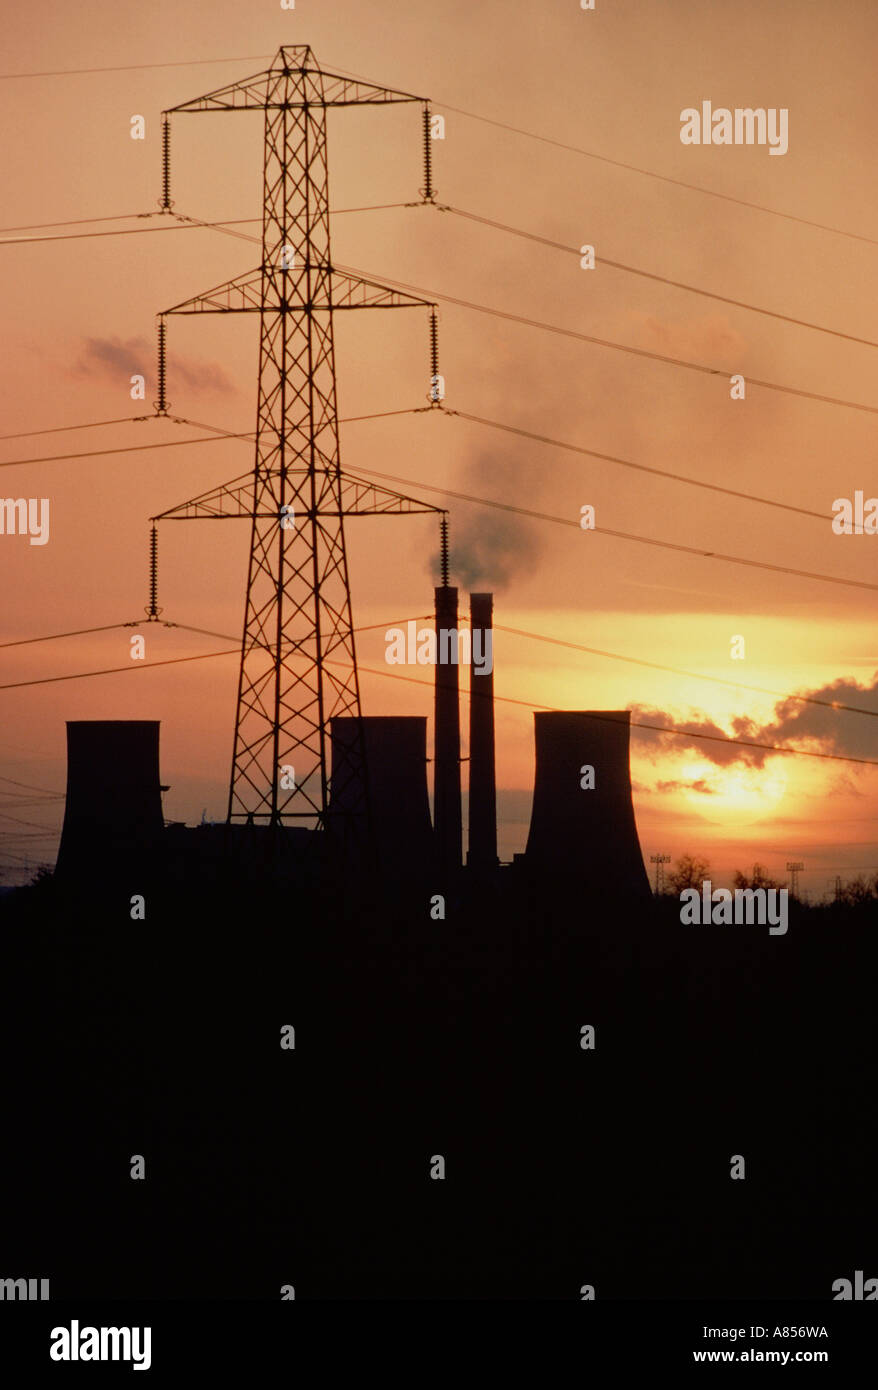 Vereinigtes Königreich. England. Trent Vale. West Burton Power Station Kühltürme und Strom pylon Silhouette bei Sonnenuntergang. Stockfoto